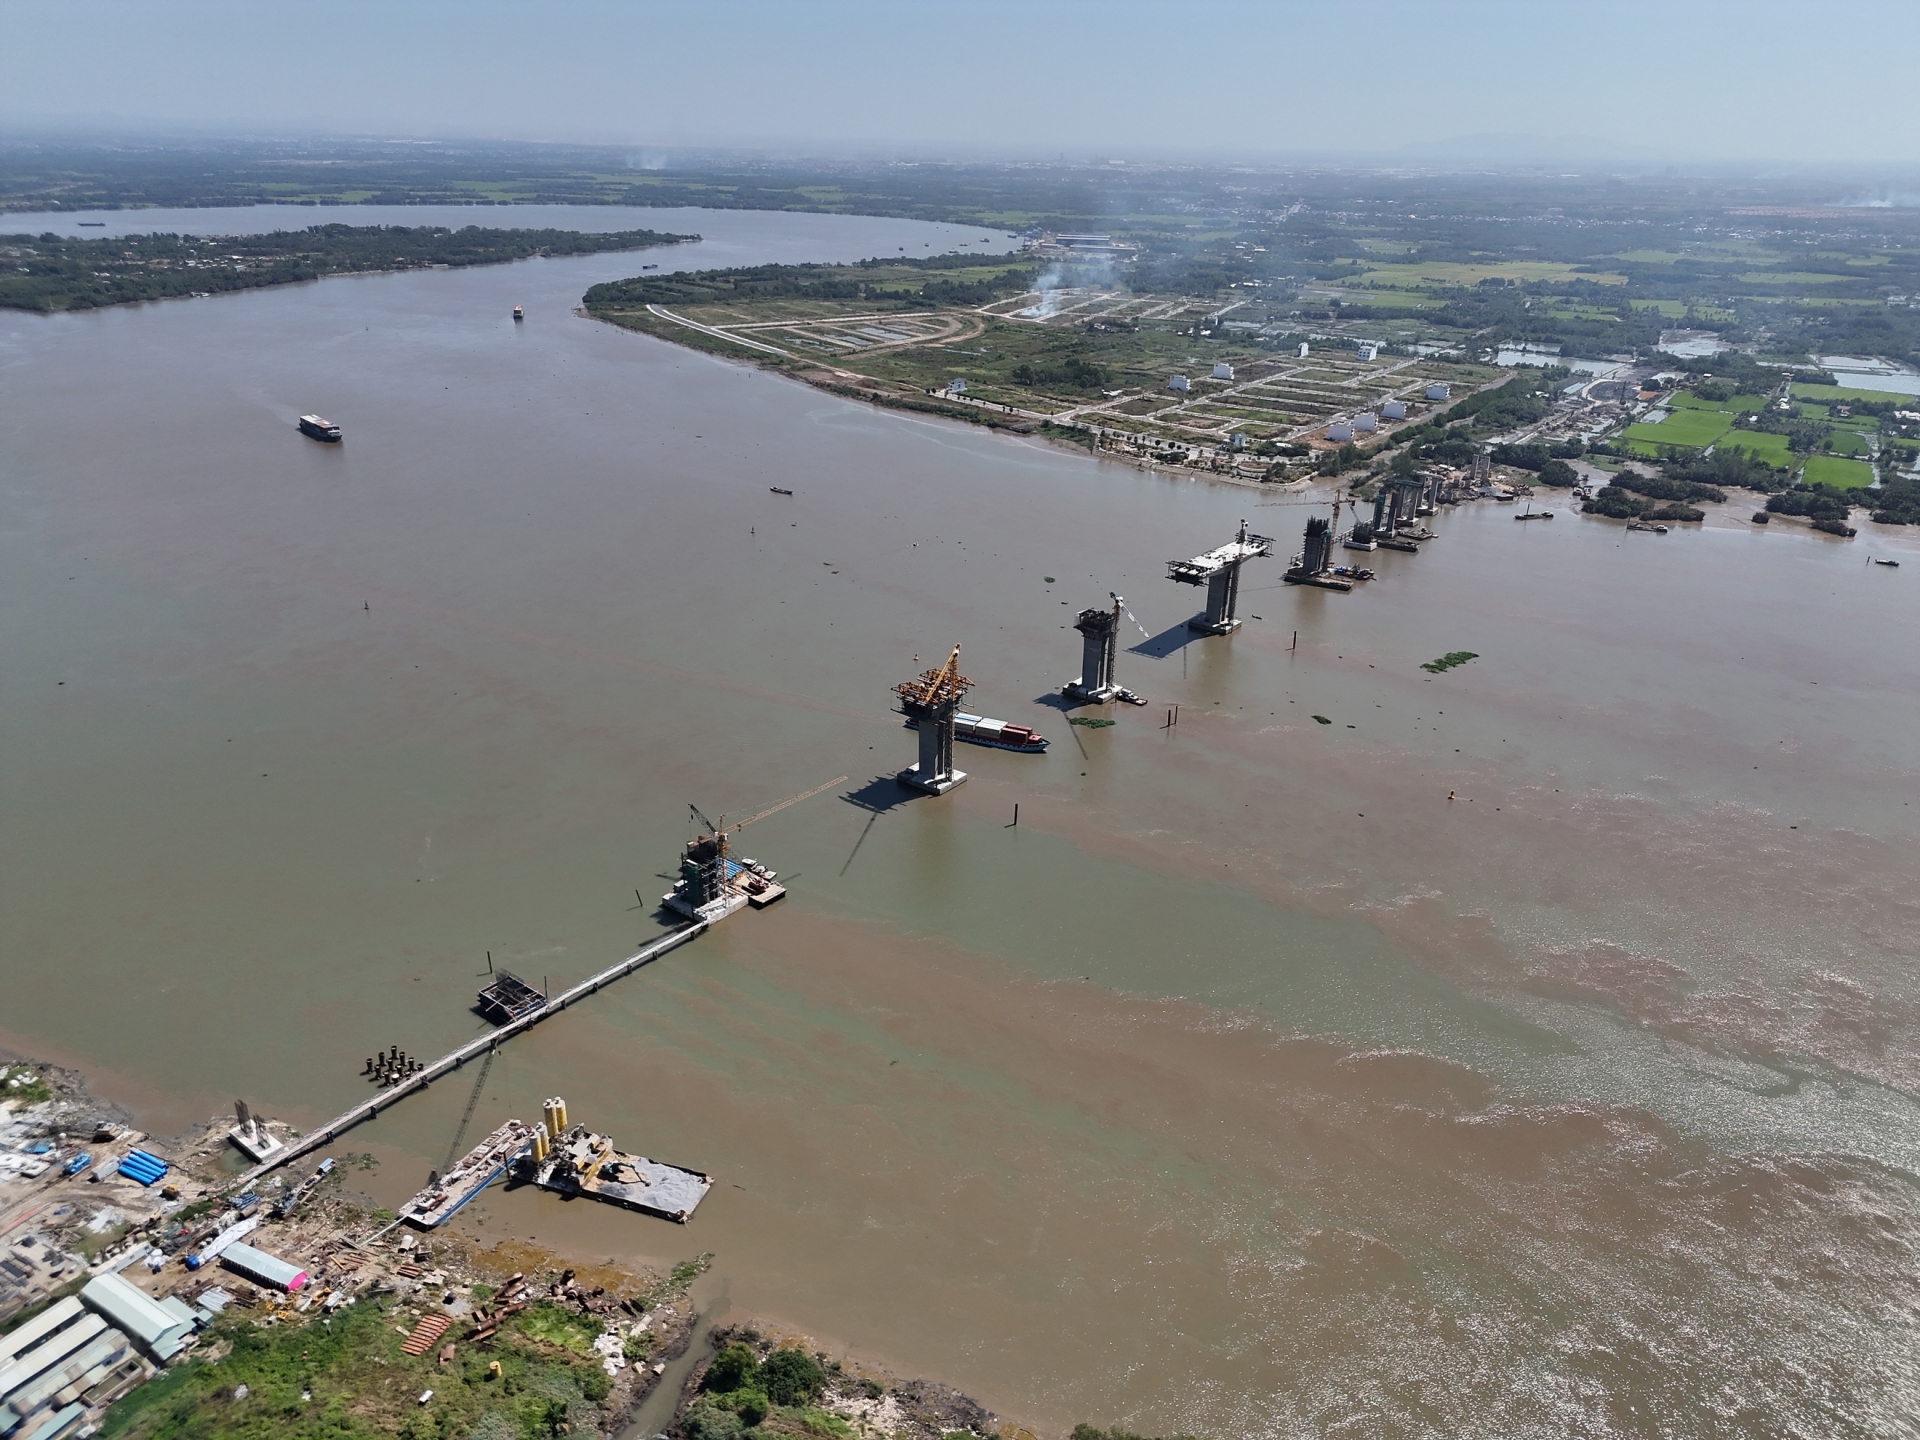 Cận cảnh dự án Cầu Nhơn Trạch sau hơn 1 năm thi công